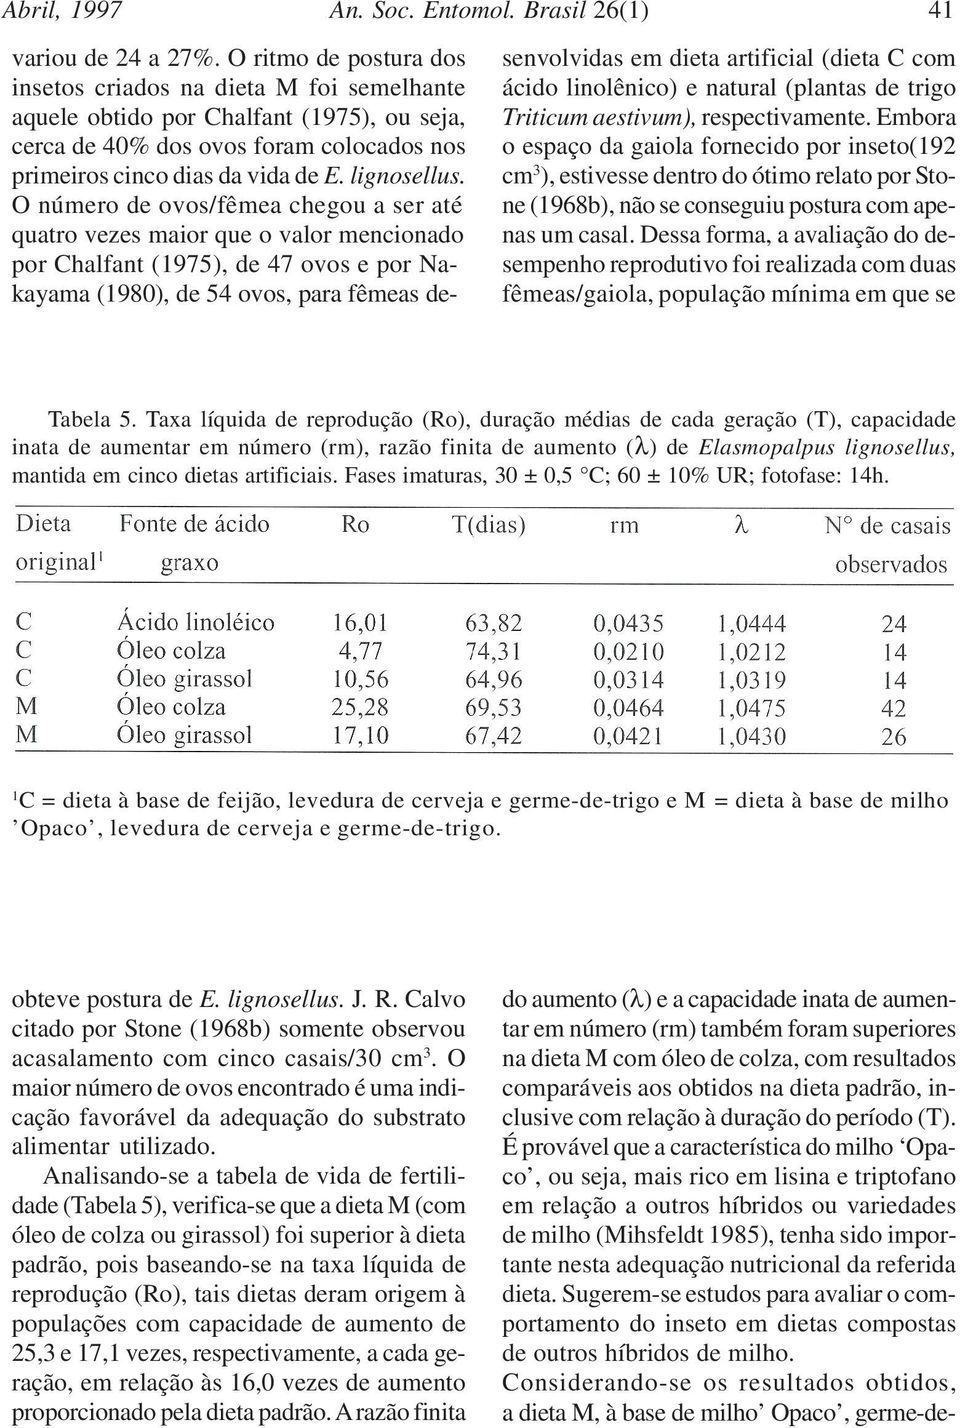 O número de ovos/fêmea chegou a ser até quatro vezes maior que o valor mencionado por Chalfant (975), de 47 ovos e por Nakayama (980), de 54 ovos, para fêmeas desenvolvidas em dieta artificial (dieta